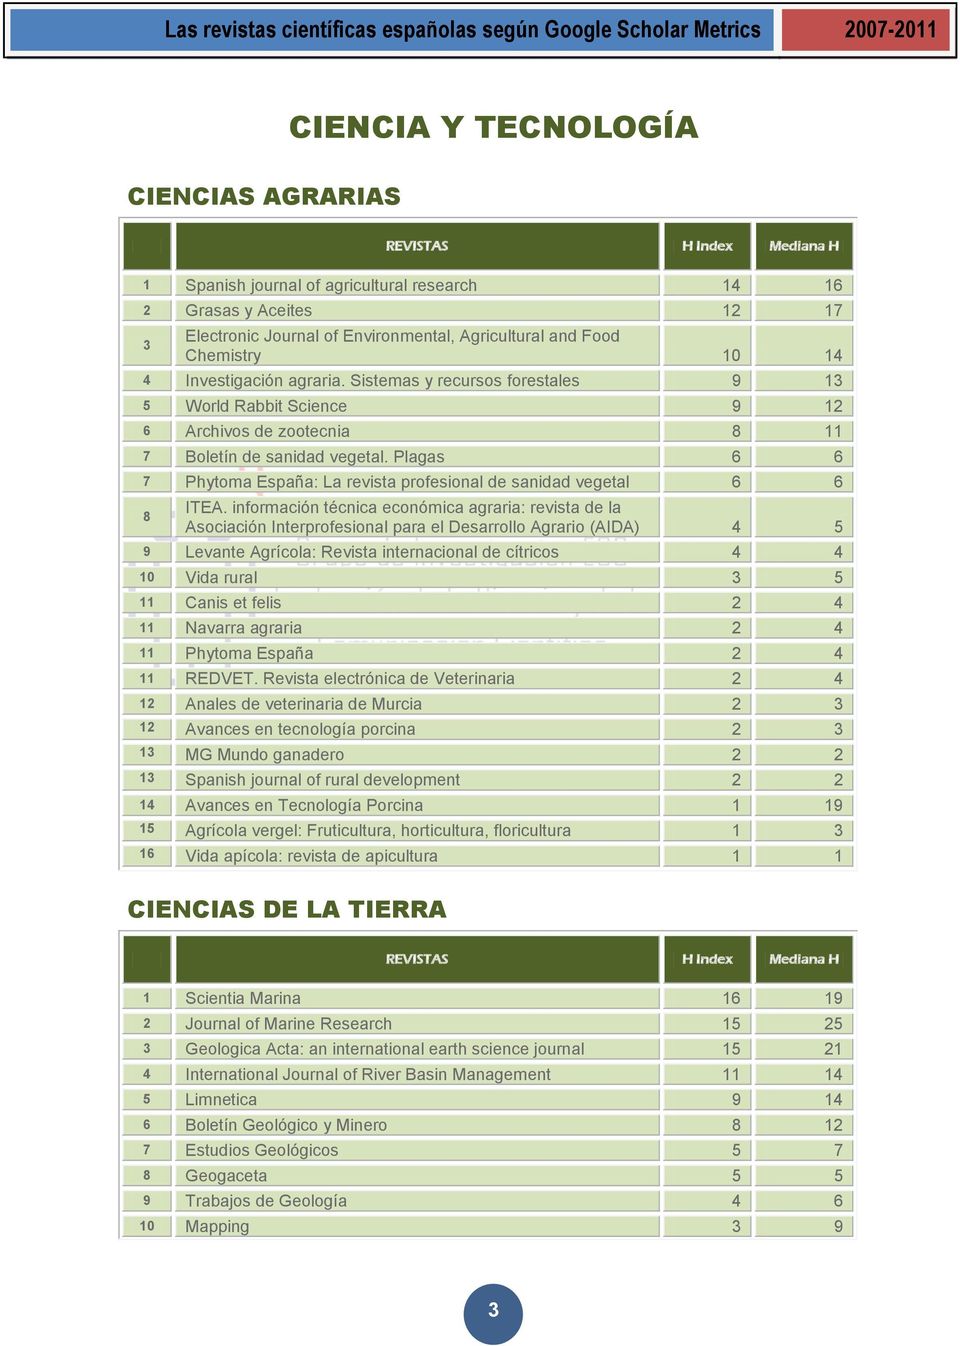 Plagas 6 6 7 Phytoma España: La revista profesional de sanidad vegetal 6 6 8 ITEA.